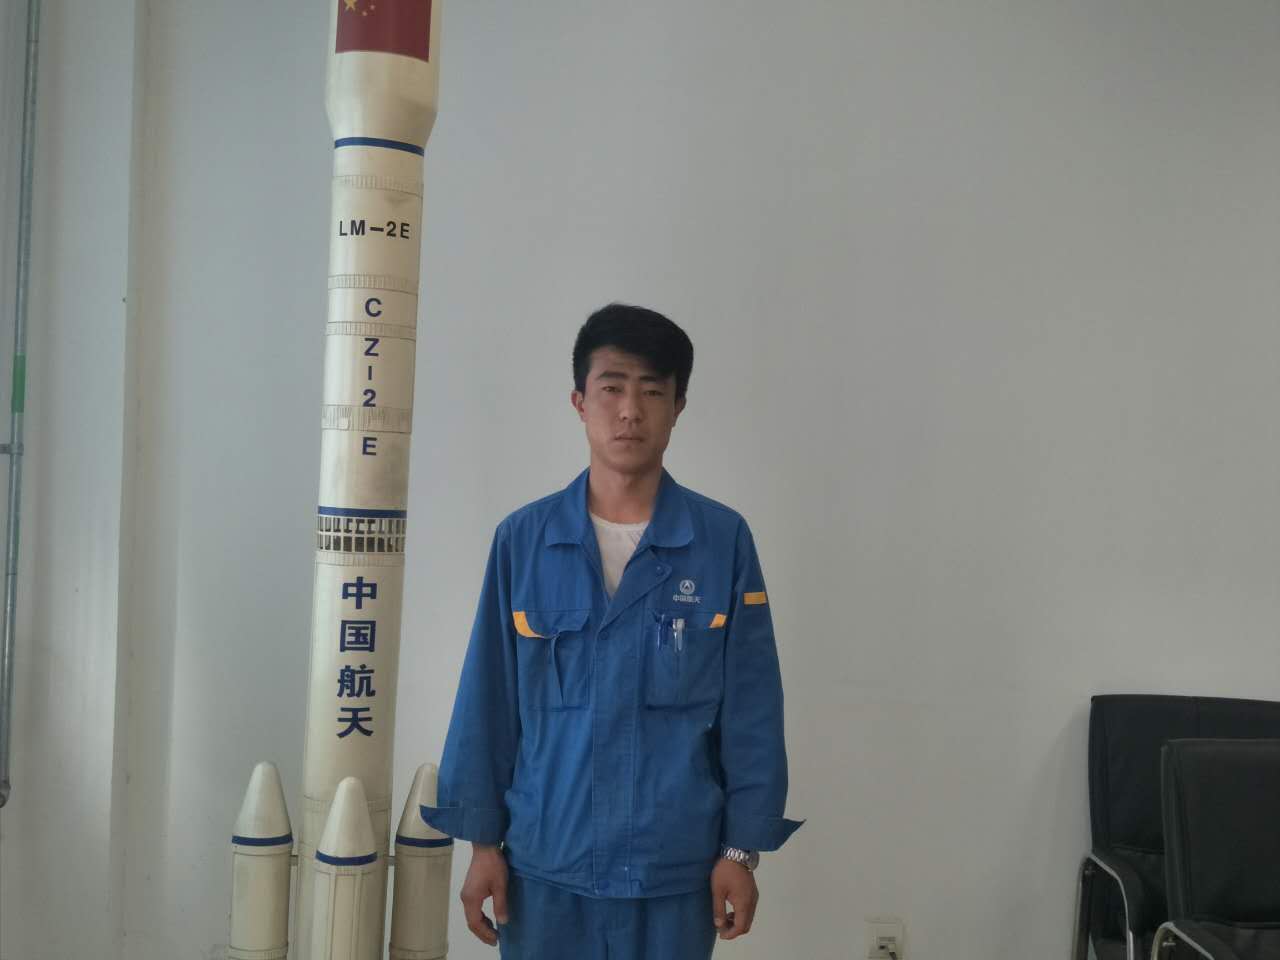 现就职于中国运载火箭技术研究院。